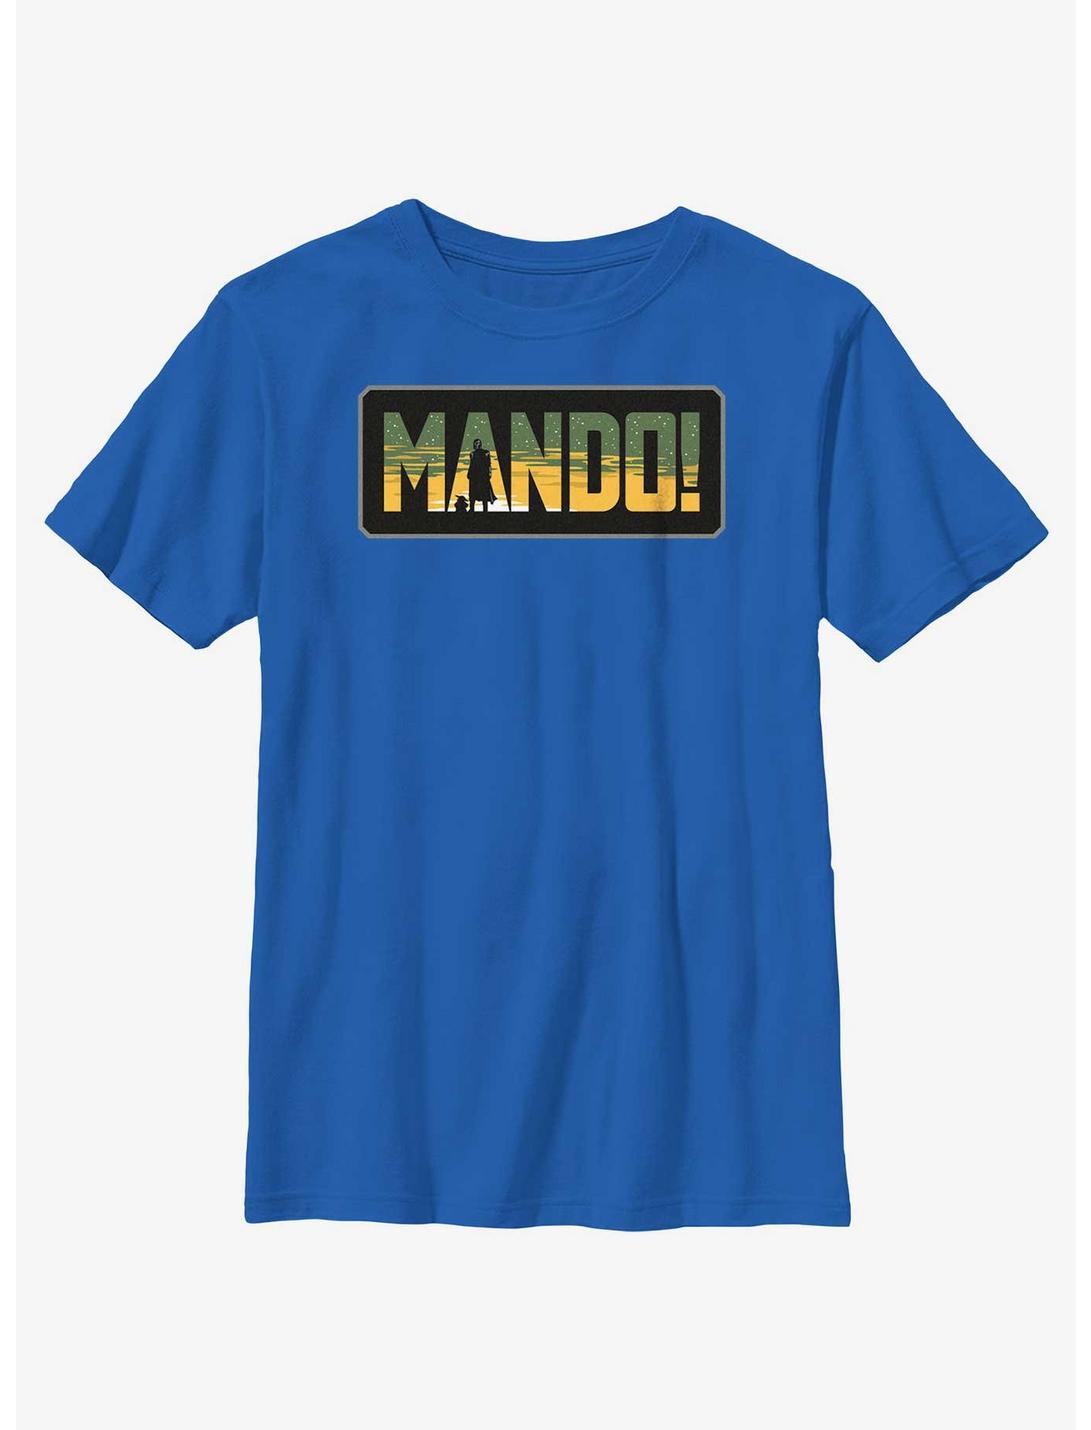 Star Wars The Mandalorian Mando Badge Youth T-Shirt, ROYAL, hi-res